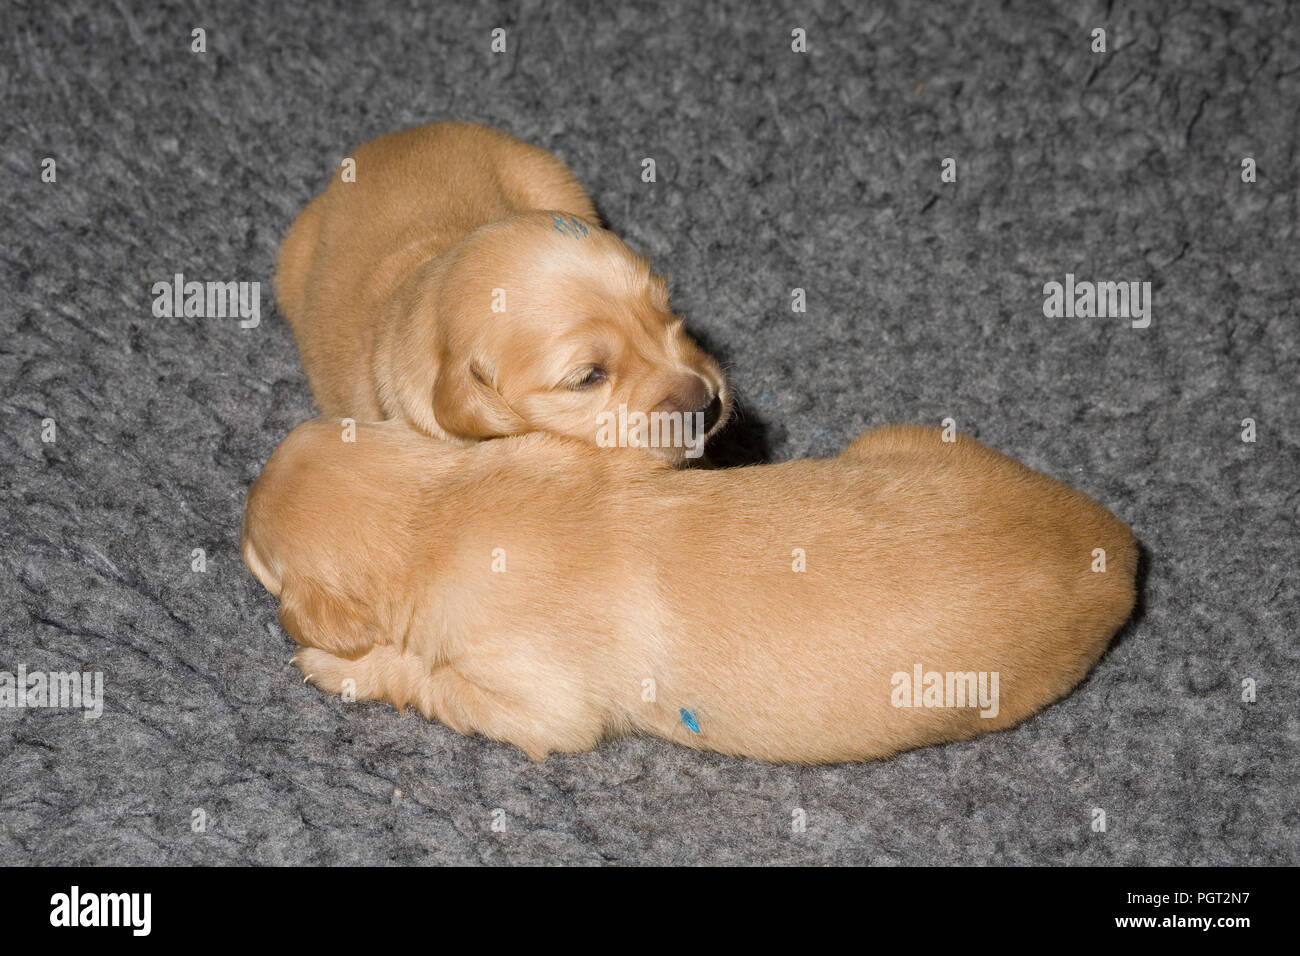 Dos de los hombres de una camada de cachorros de golden retriever yaciendo juntos en una cama de piel de poliéster 'vet' alfombra Foto de stock